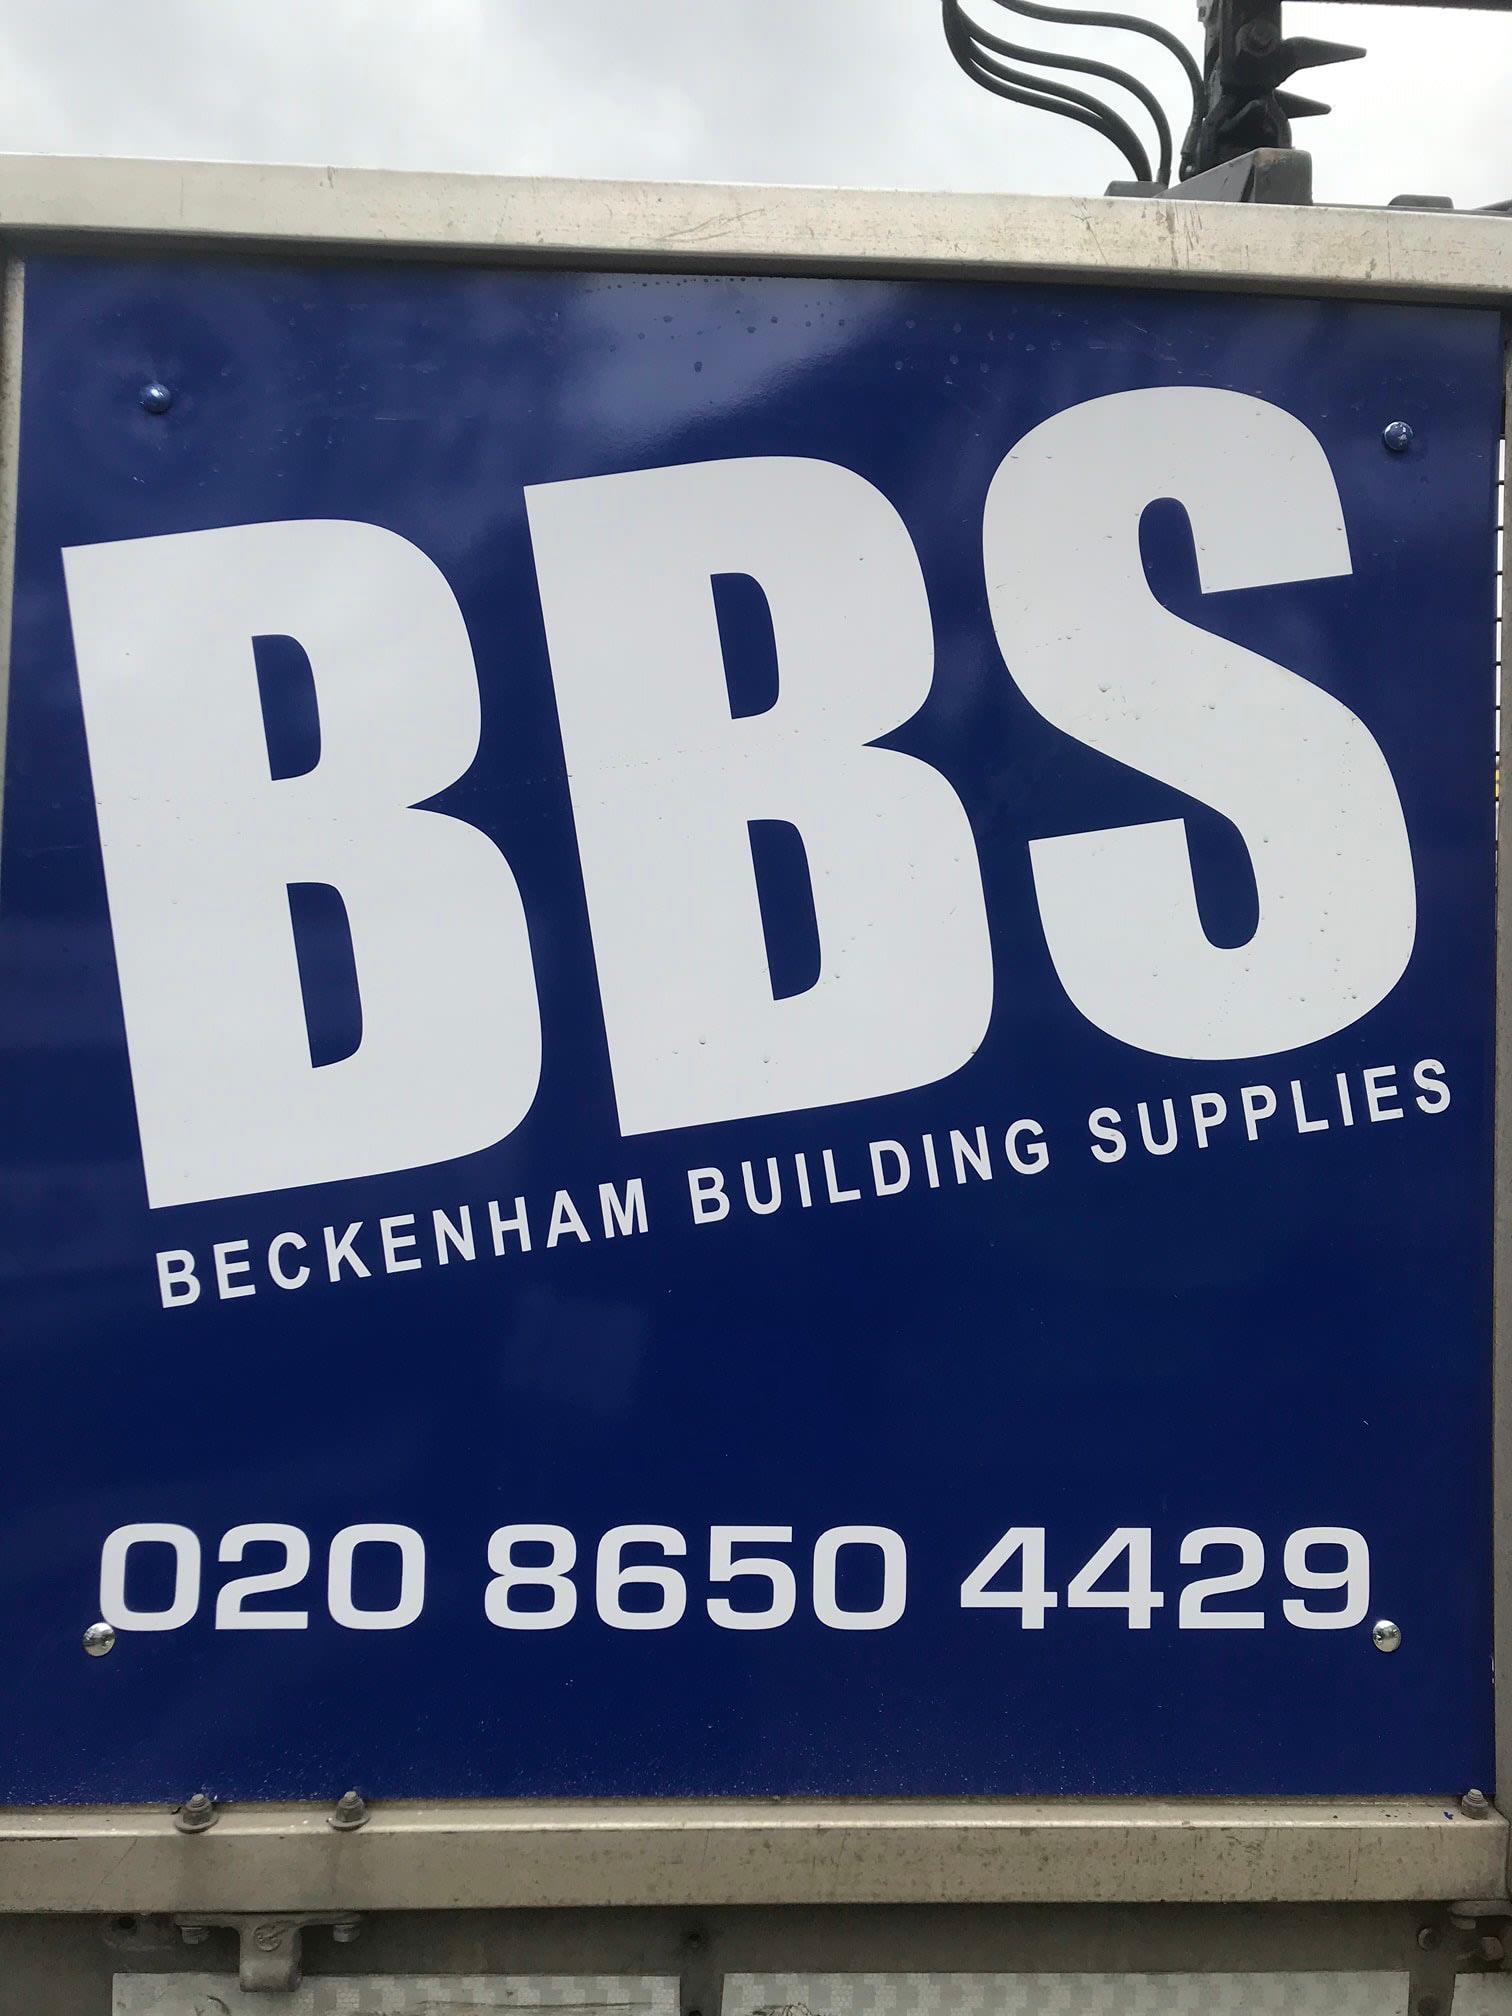 Beckenham Building Supplies Beckenham 020 8650 4429